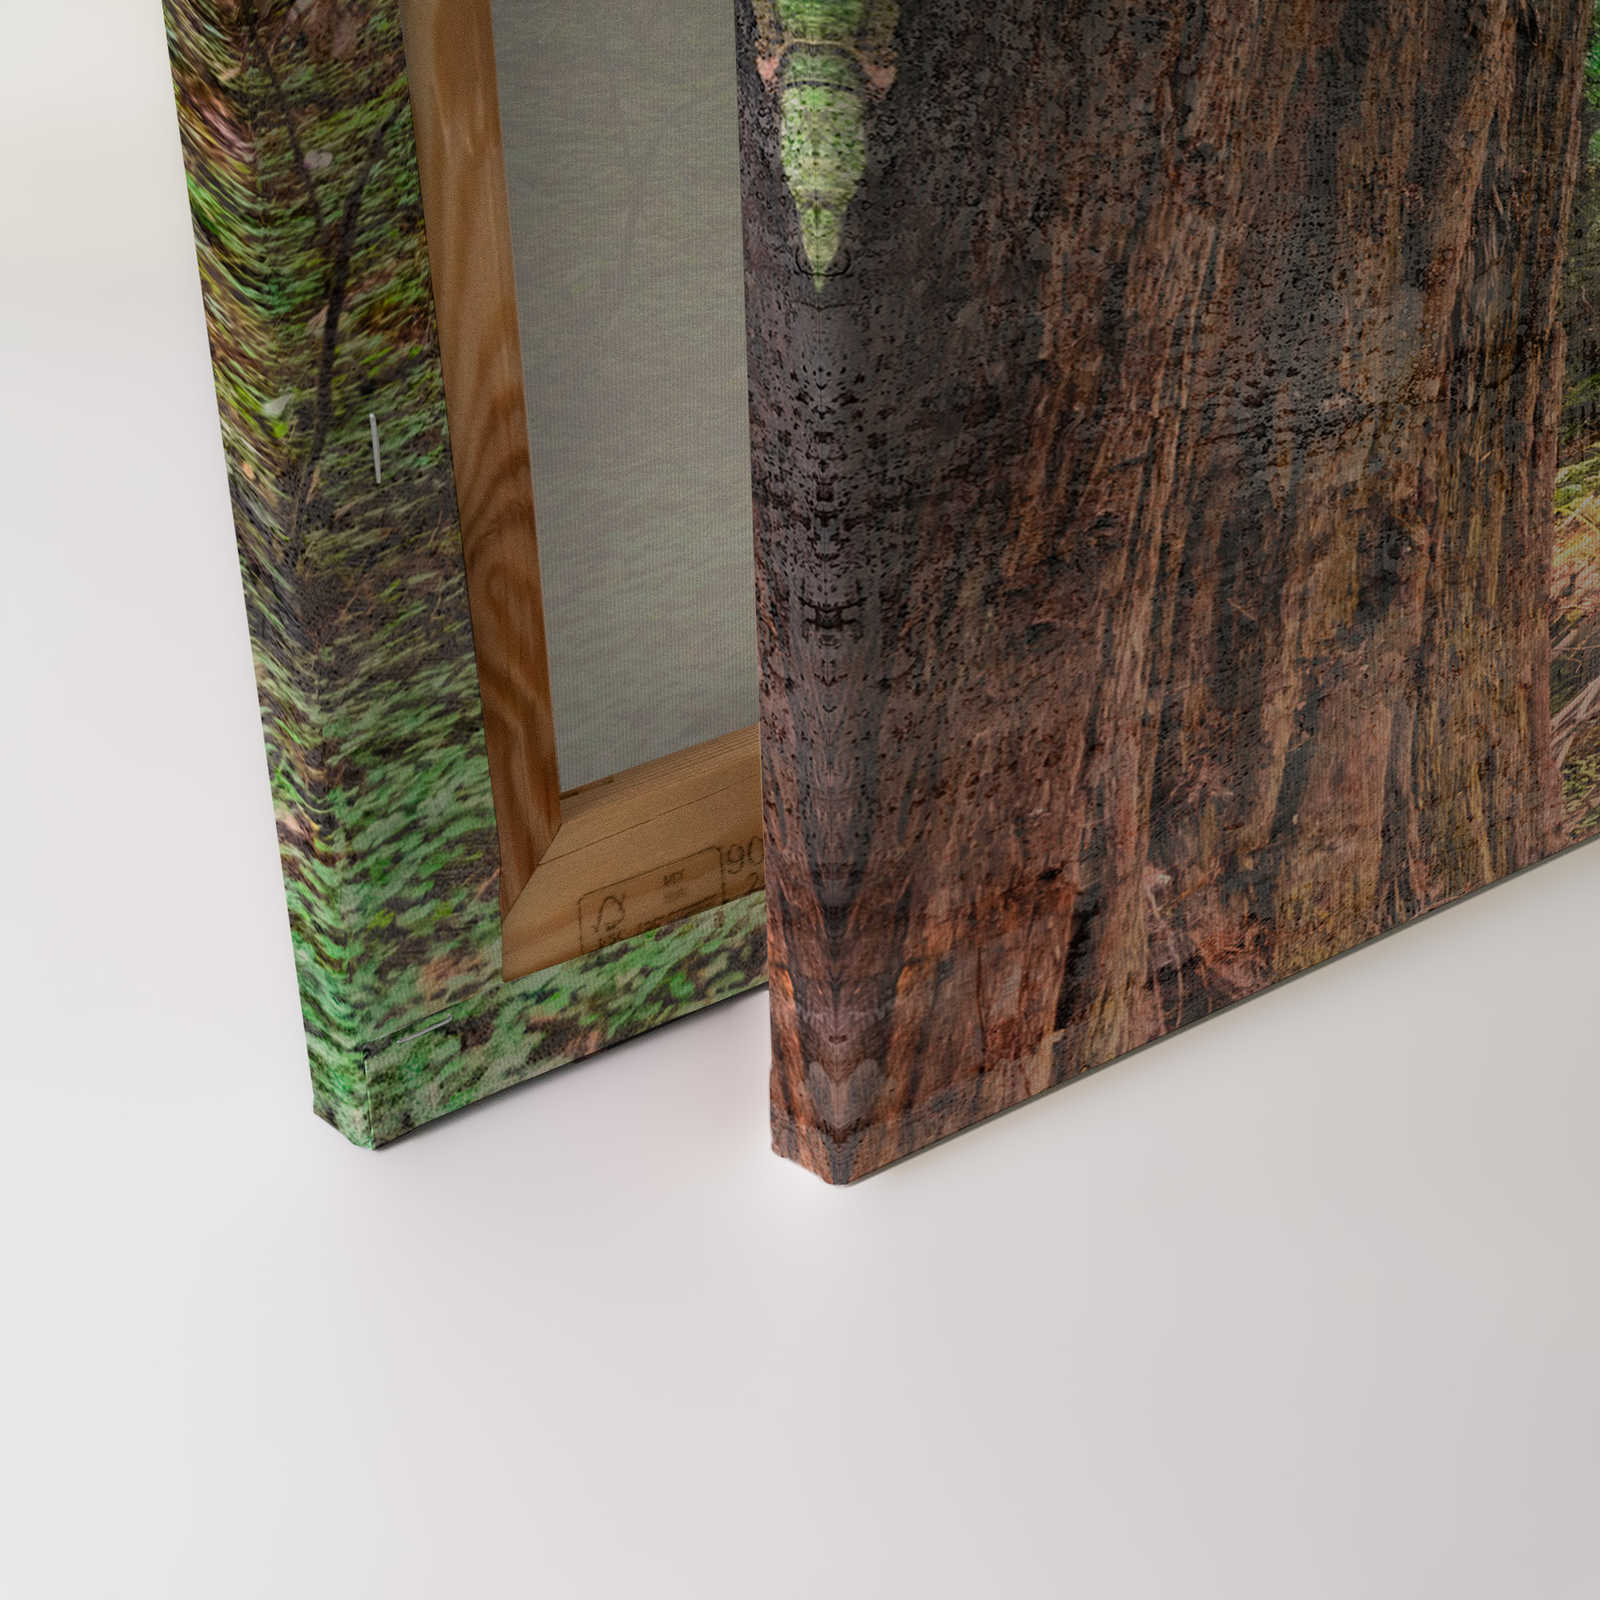             Leinwand mit Holztreppe durch den Wald | braun, grün, blau – 0,90 m x 0,60 m
        